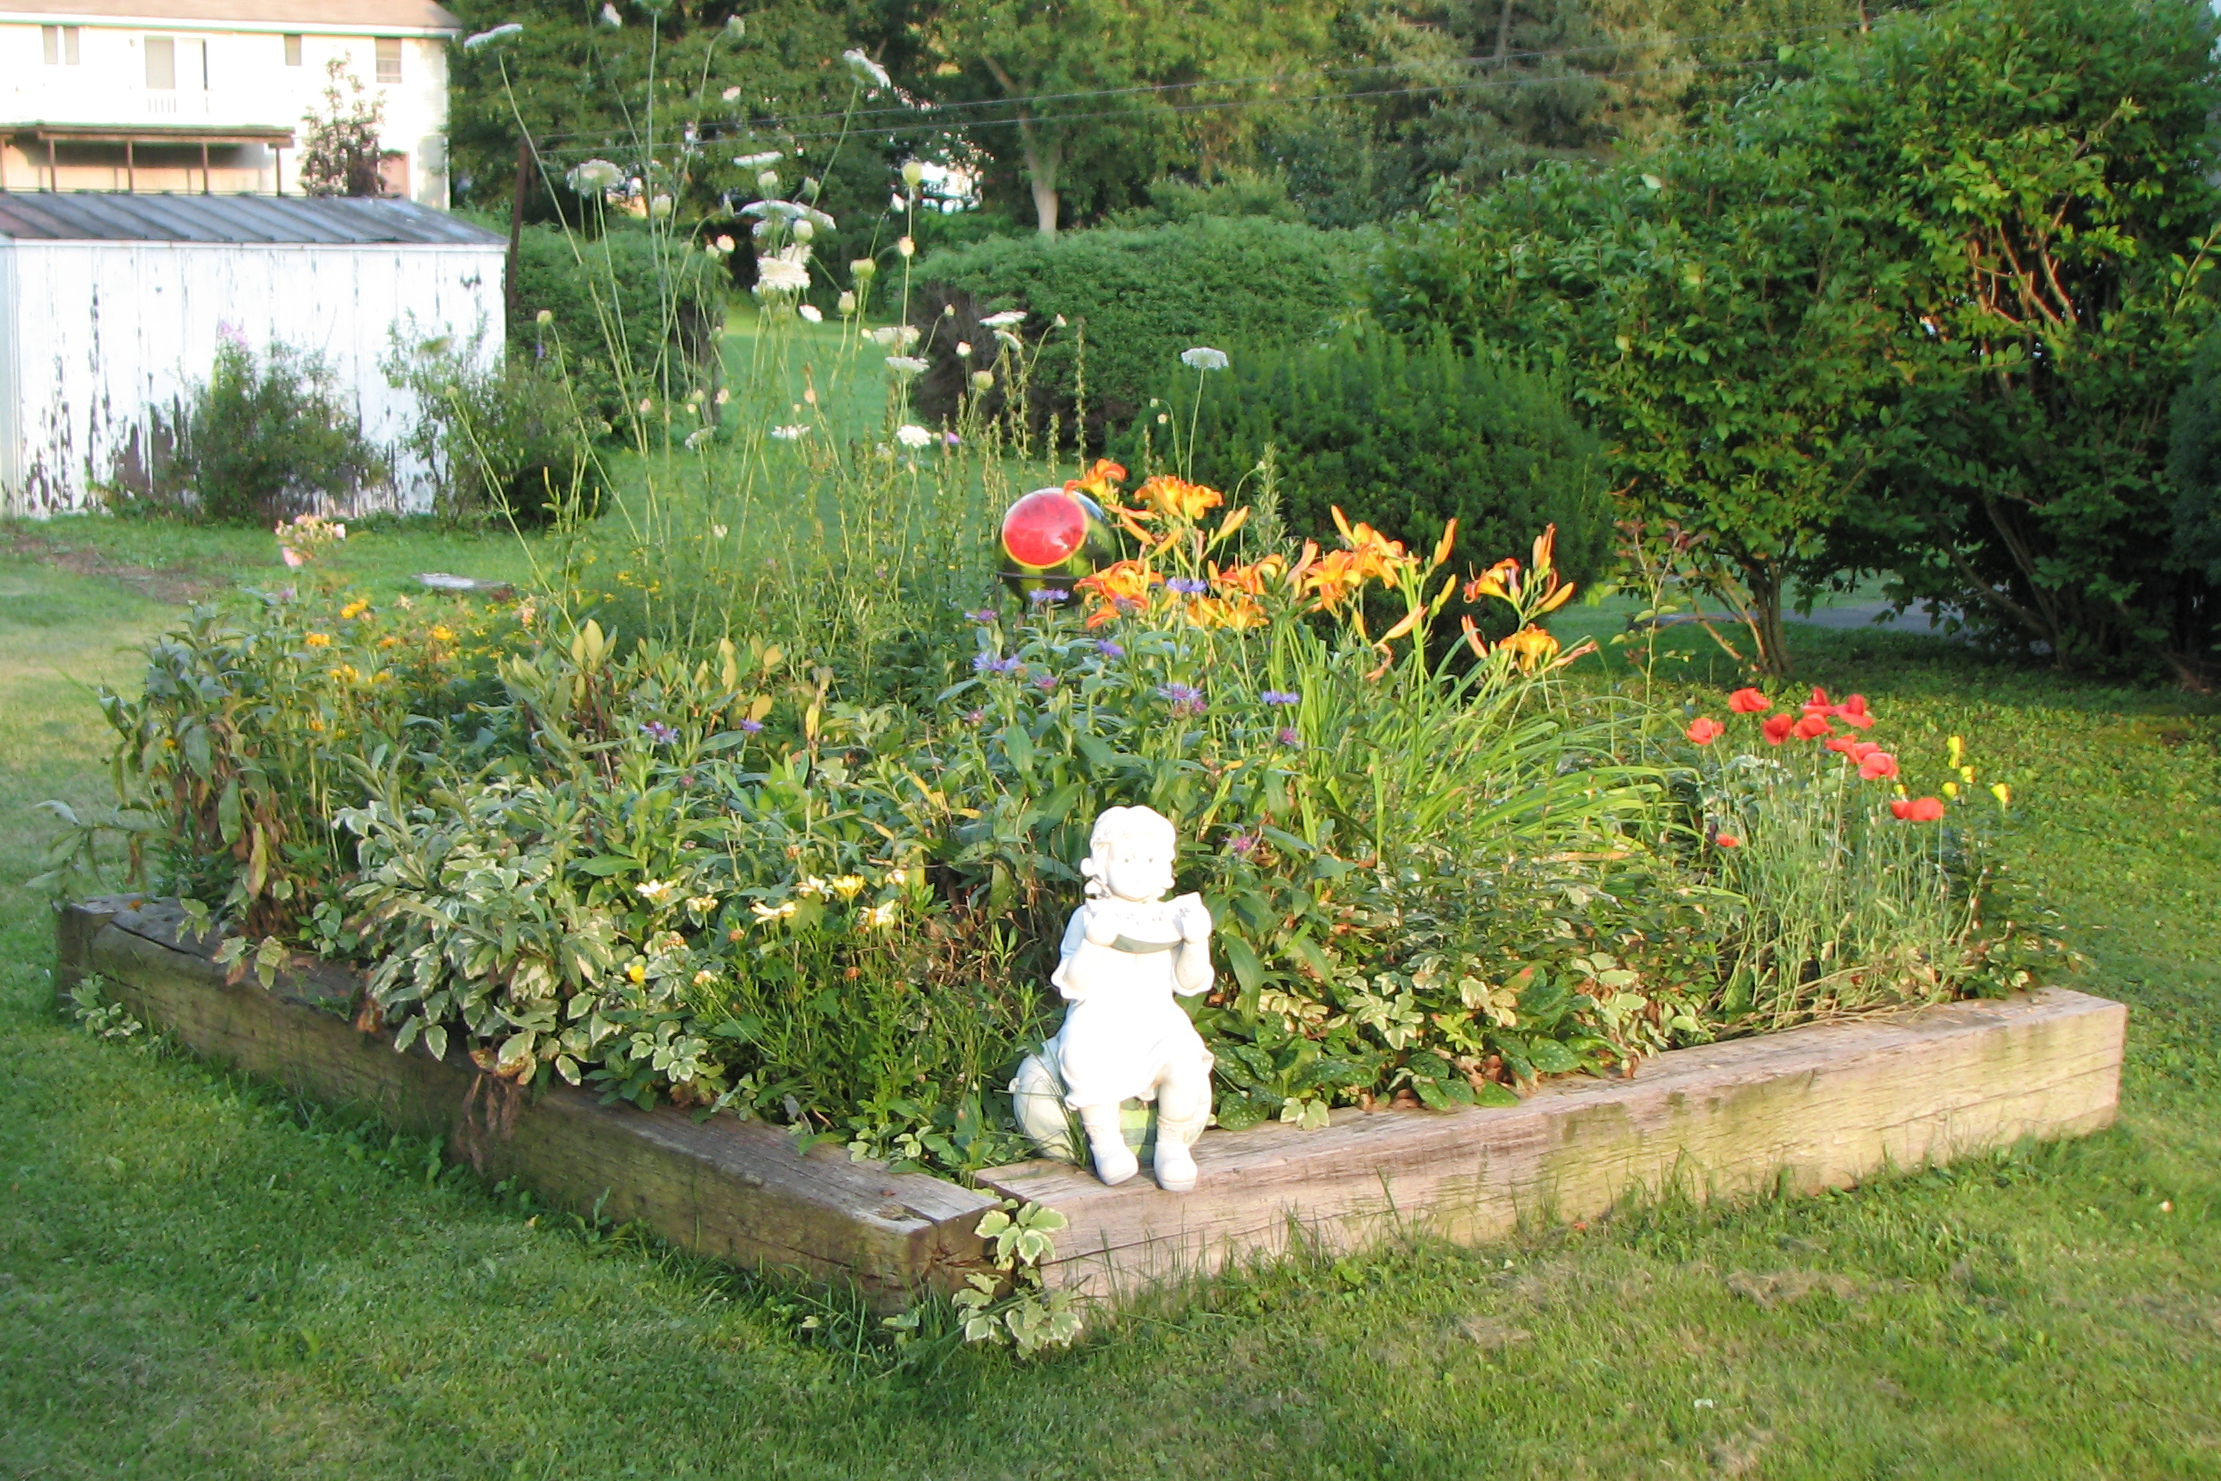 08-06-2009-garden1